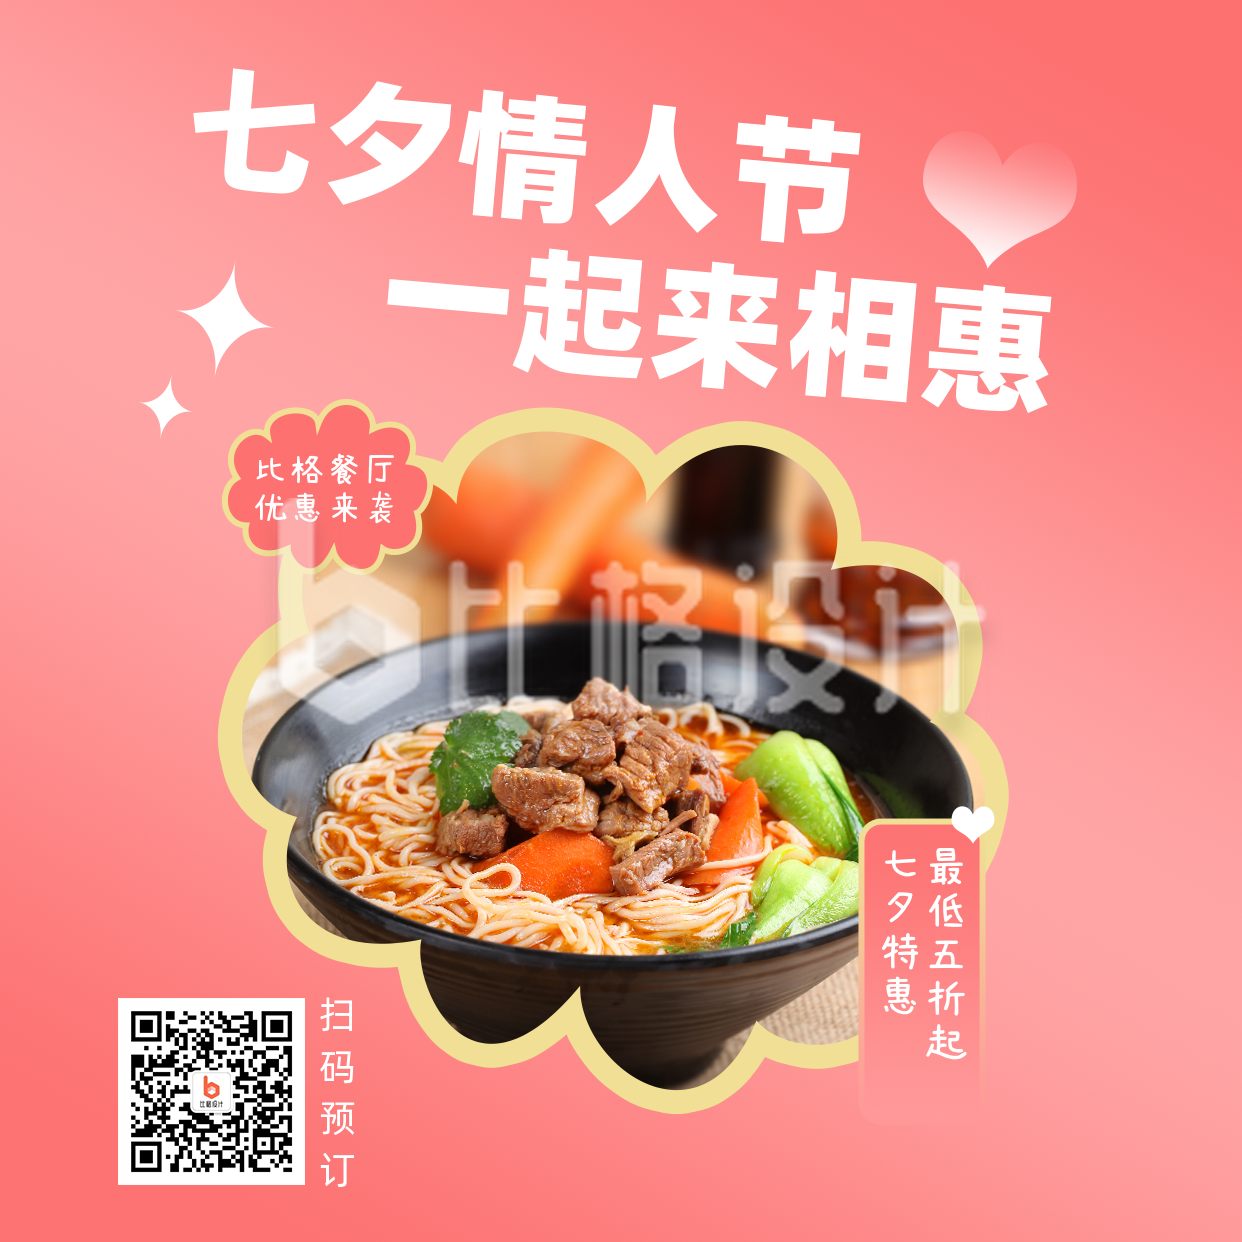 节日七夕餐饮美食活动优惠简约粉色简约实景方形海报